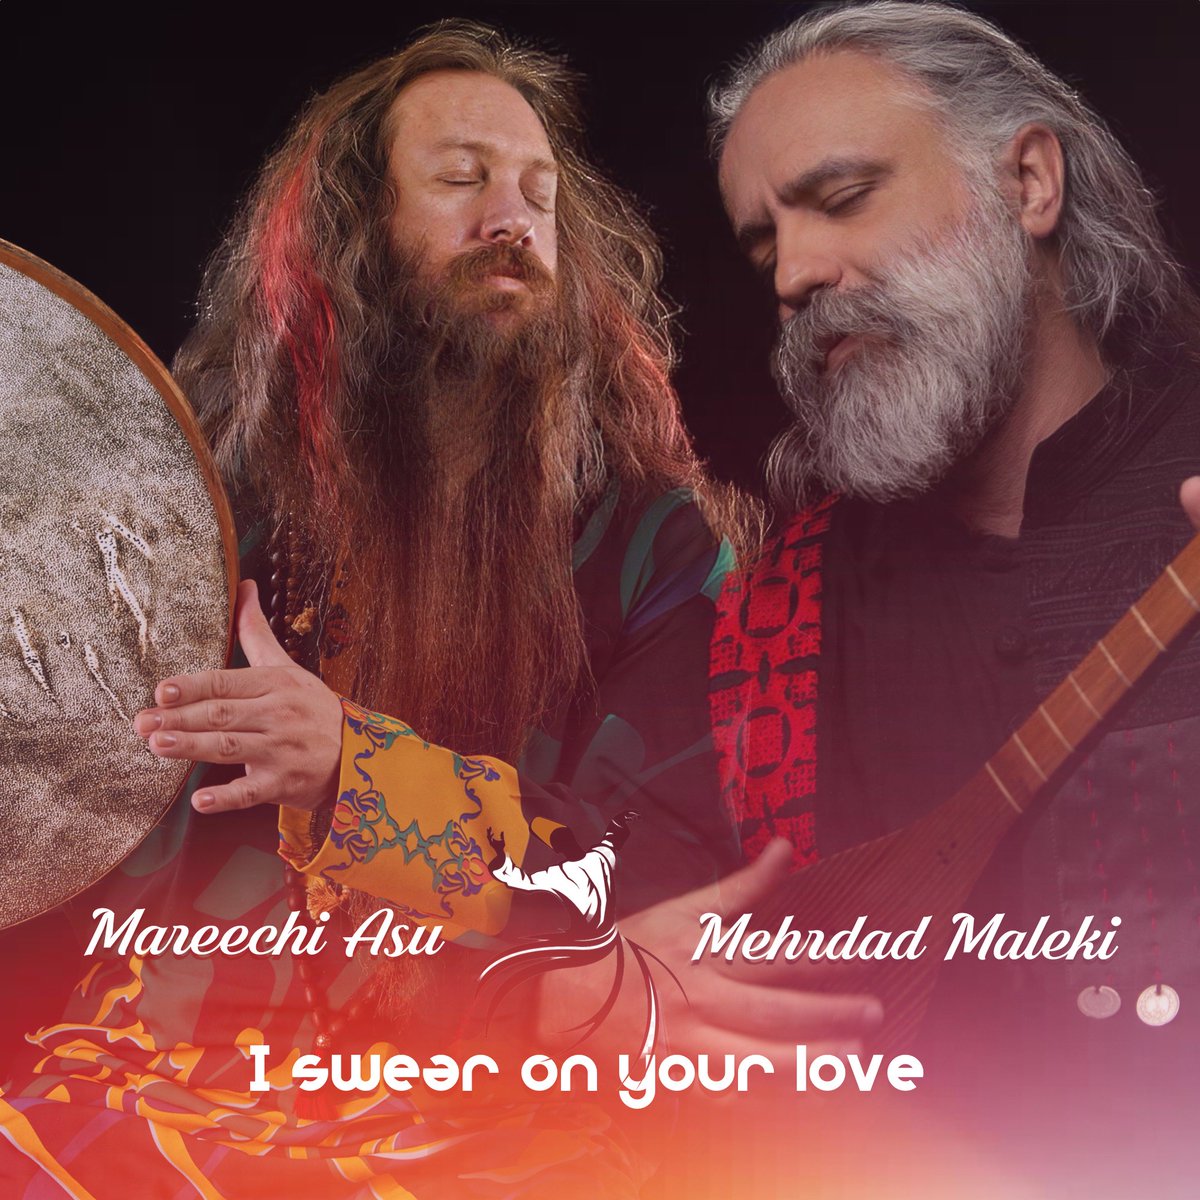 Yeni Sufi Şarkımız Yayınlandı..
open.spotify.com/album/3DwdMGOh… 
#müzik #mareechiasu #sufi #sanat #music #daf #erbane #mevlana #rumi #sufimusic #şubat2023 #yenişarkı #tanbour #mehrdadmaleki